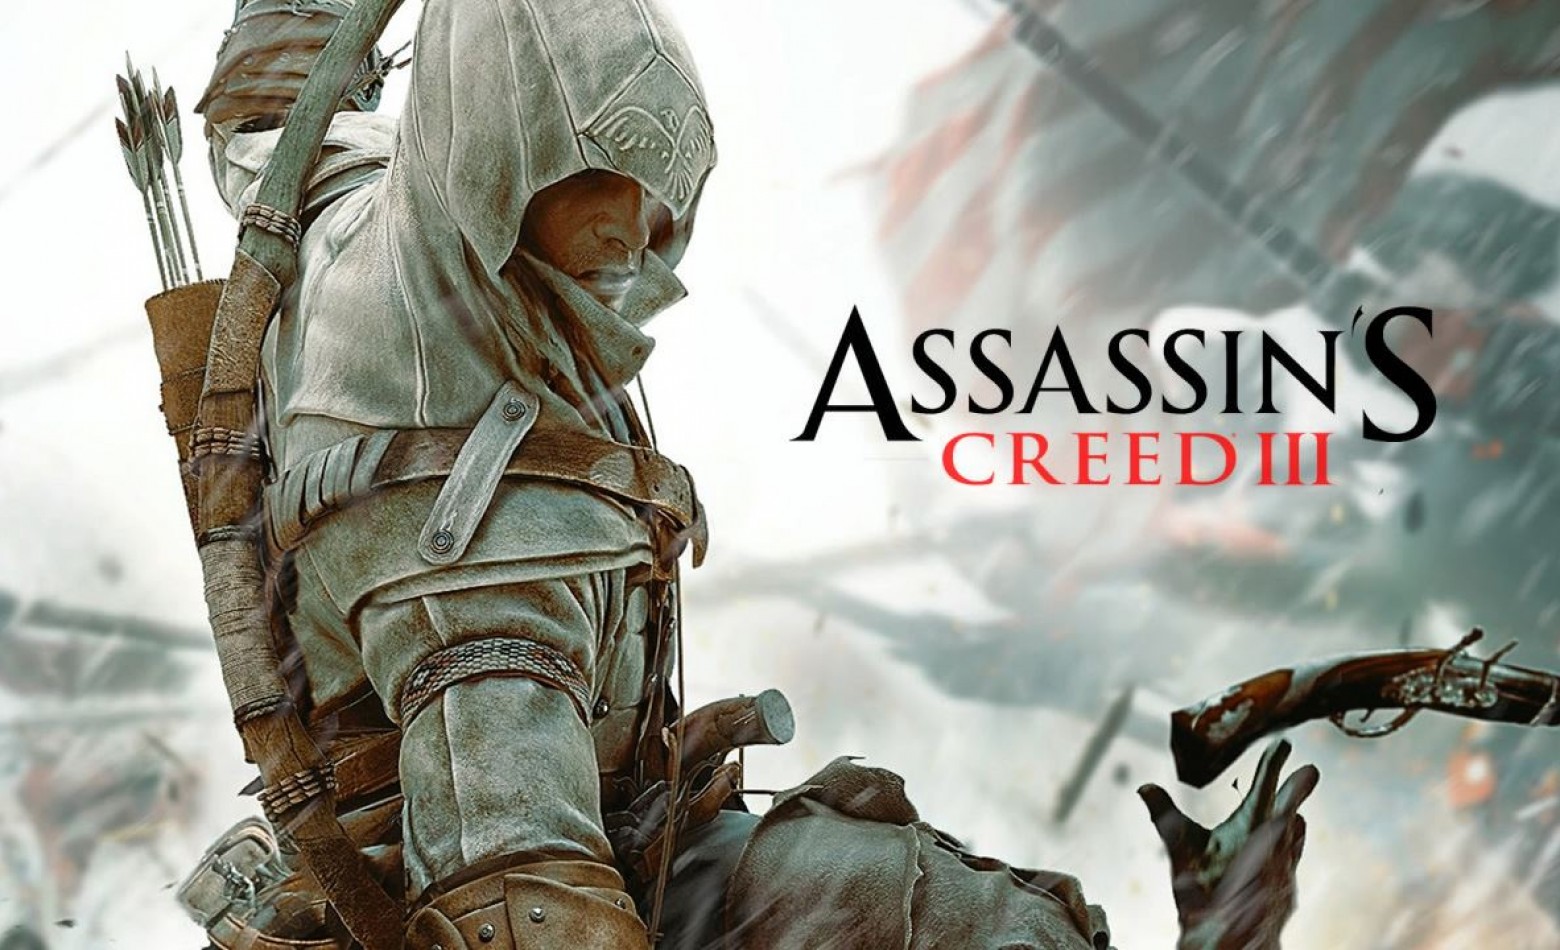 Ubisoft e Tilibra lançam cadernos oficiais de Assassin’s Creed